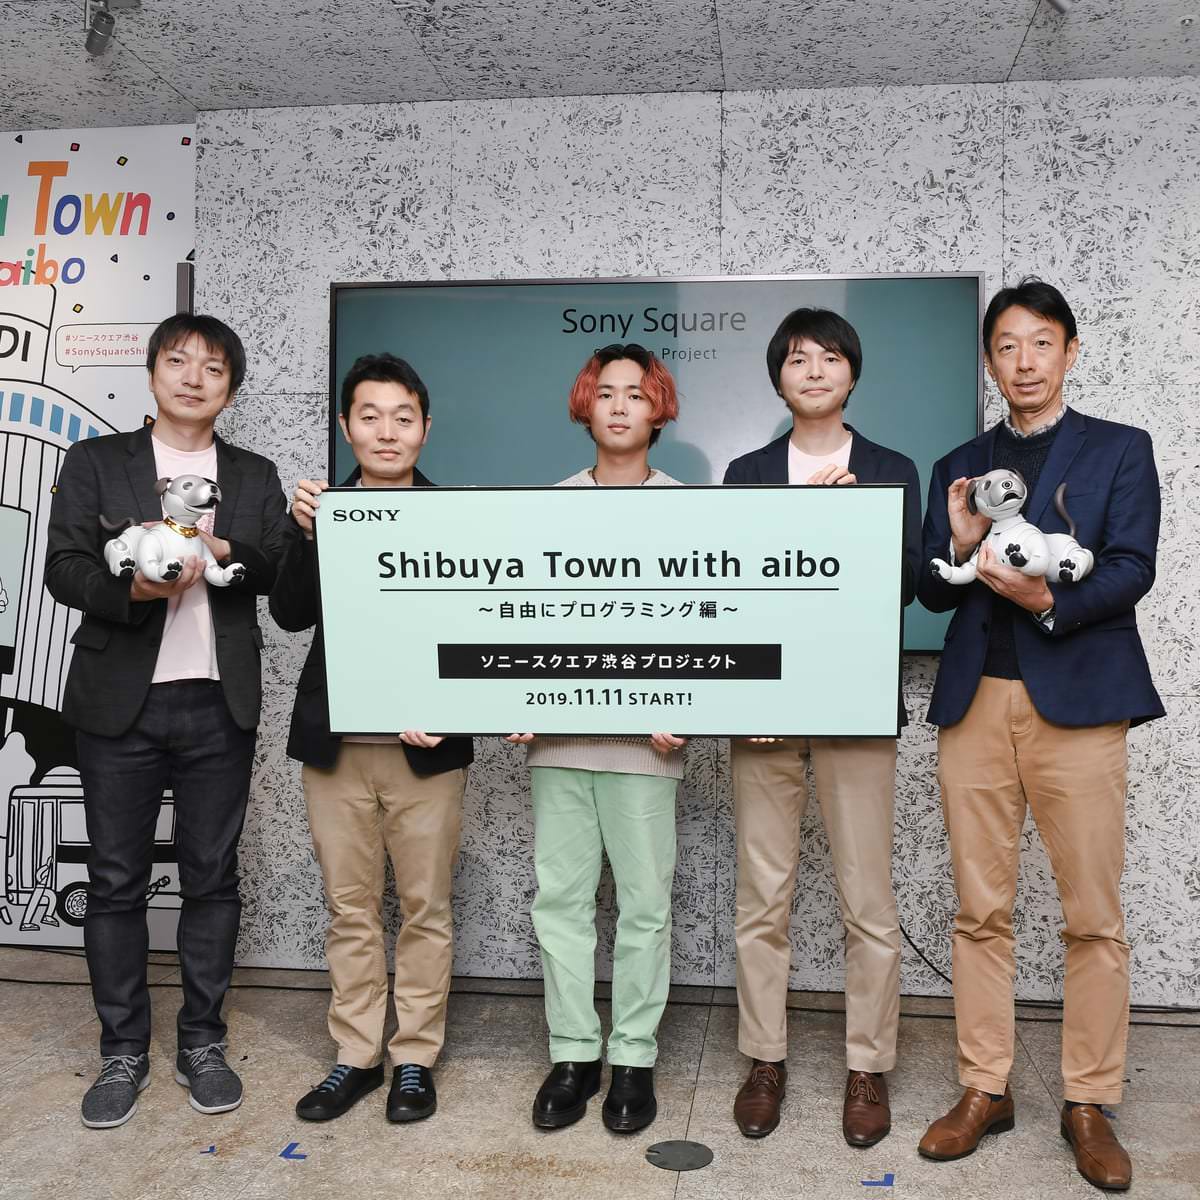 ソニースクエア渋谷プロジェクト｢Shibuya Town with aibo 〜自由にプログラミング編〜｣